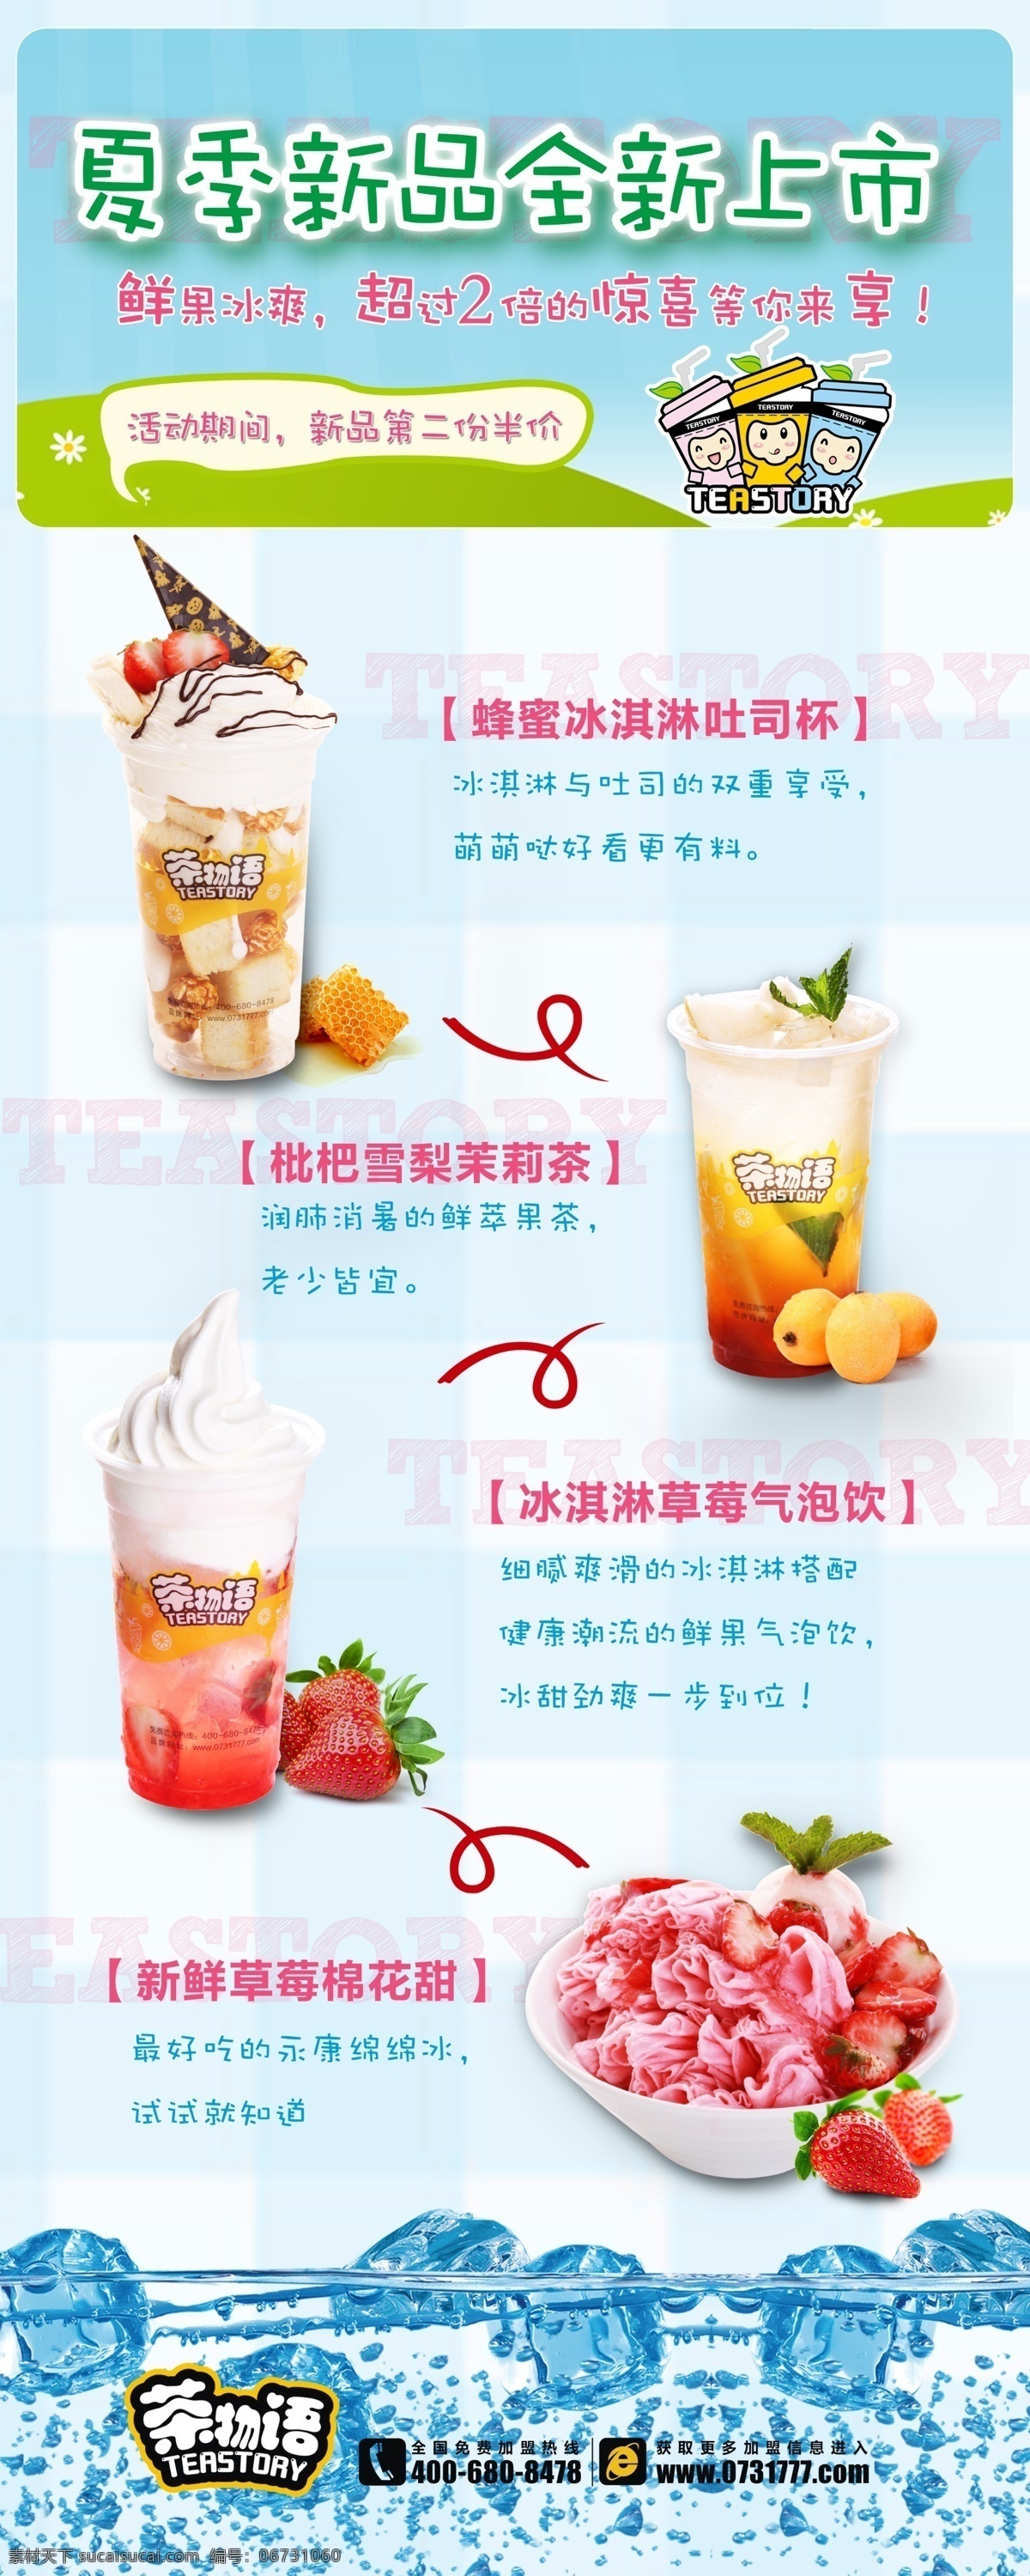 冰淇淋展架 饮品店铺 冰块 饮品灯箱 冰淇淋海报 素材源文件 饮品海报类 tif源文件